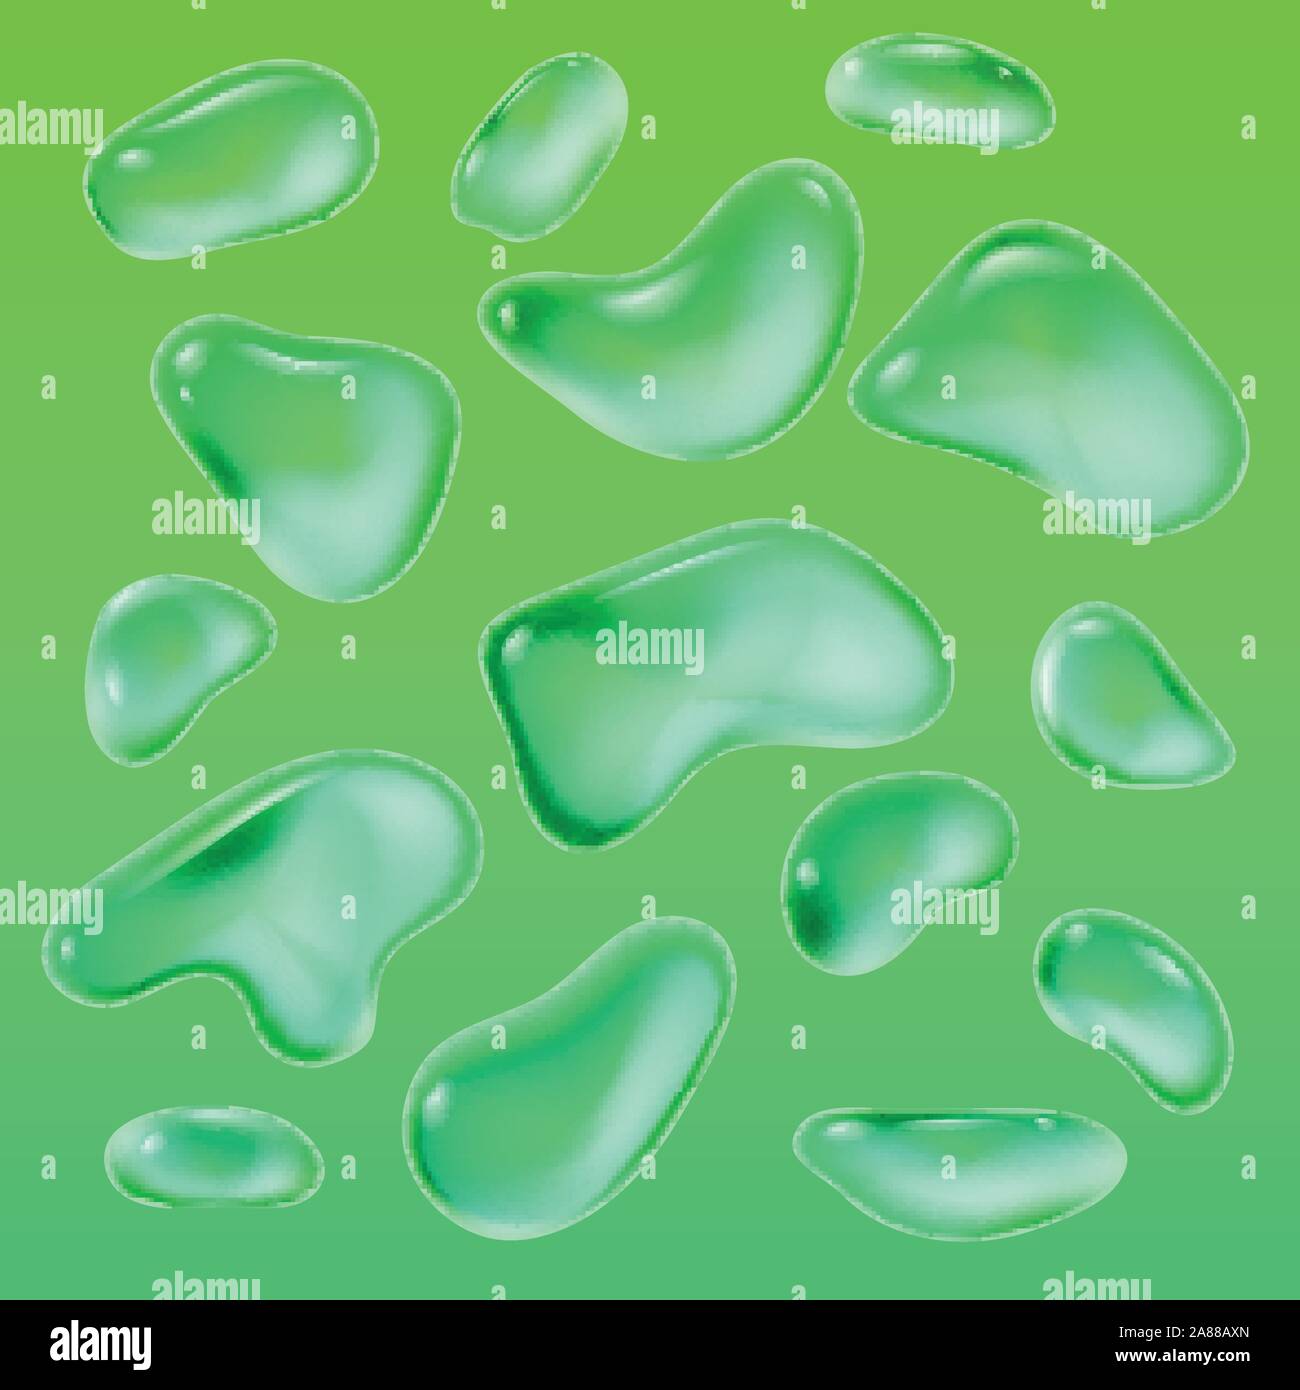 Realistische Tropfen Regen auf einem grünen Hintergrund in Form von Glas. Abstrakte eingestellt. Vector Illustration. Stock Vektor